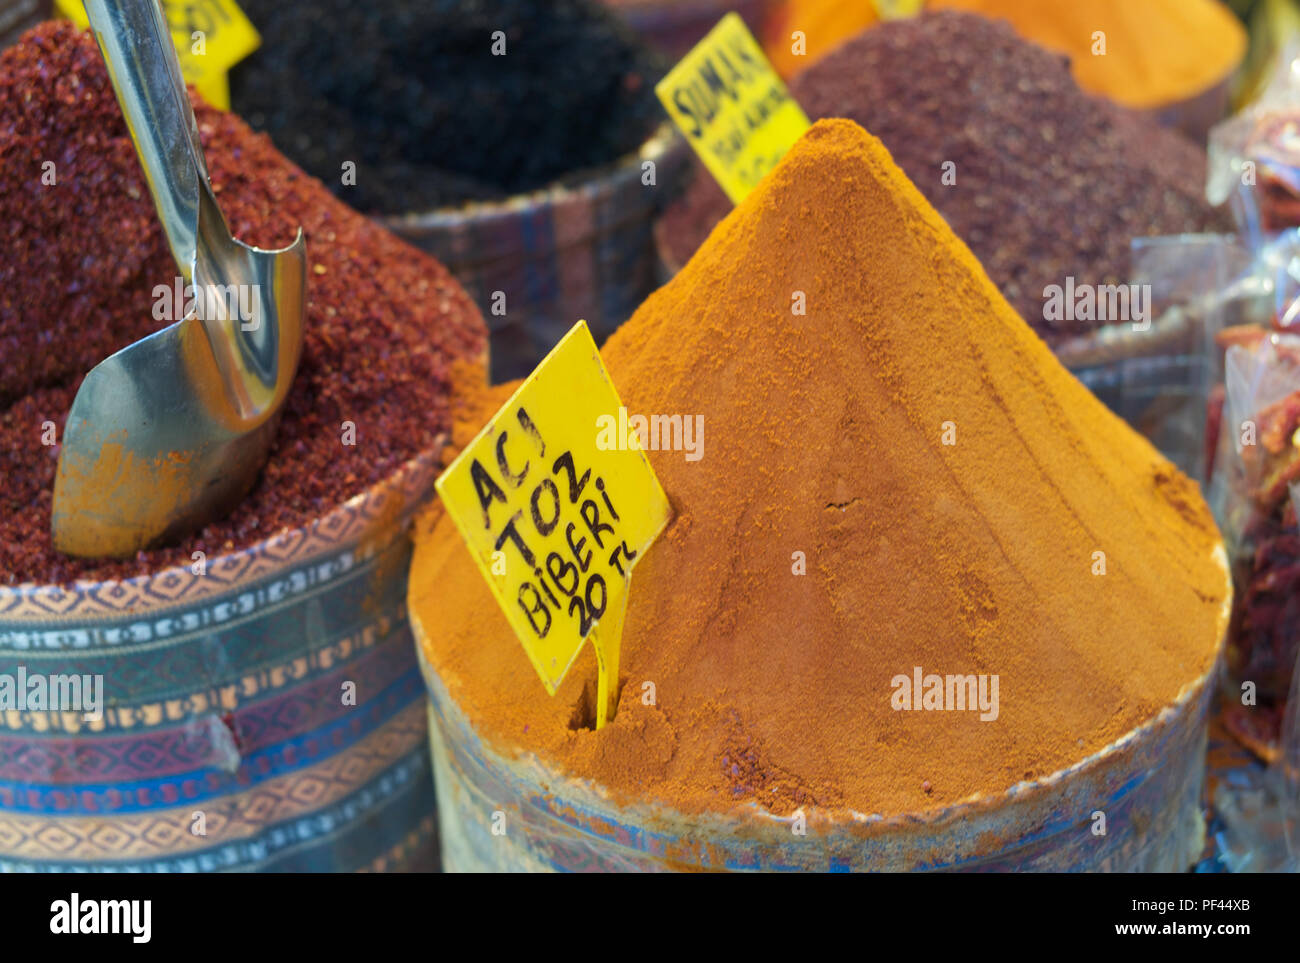 Especias rojas y amarillas en el bazar de Eqyptian, Estambul; señal de tranlación delantera: ACI toz biberi - pimienta molida caliente 20 Tl (lira turca); Foto de stock